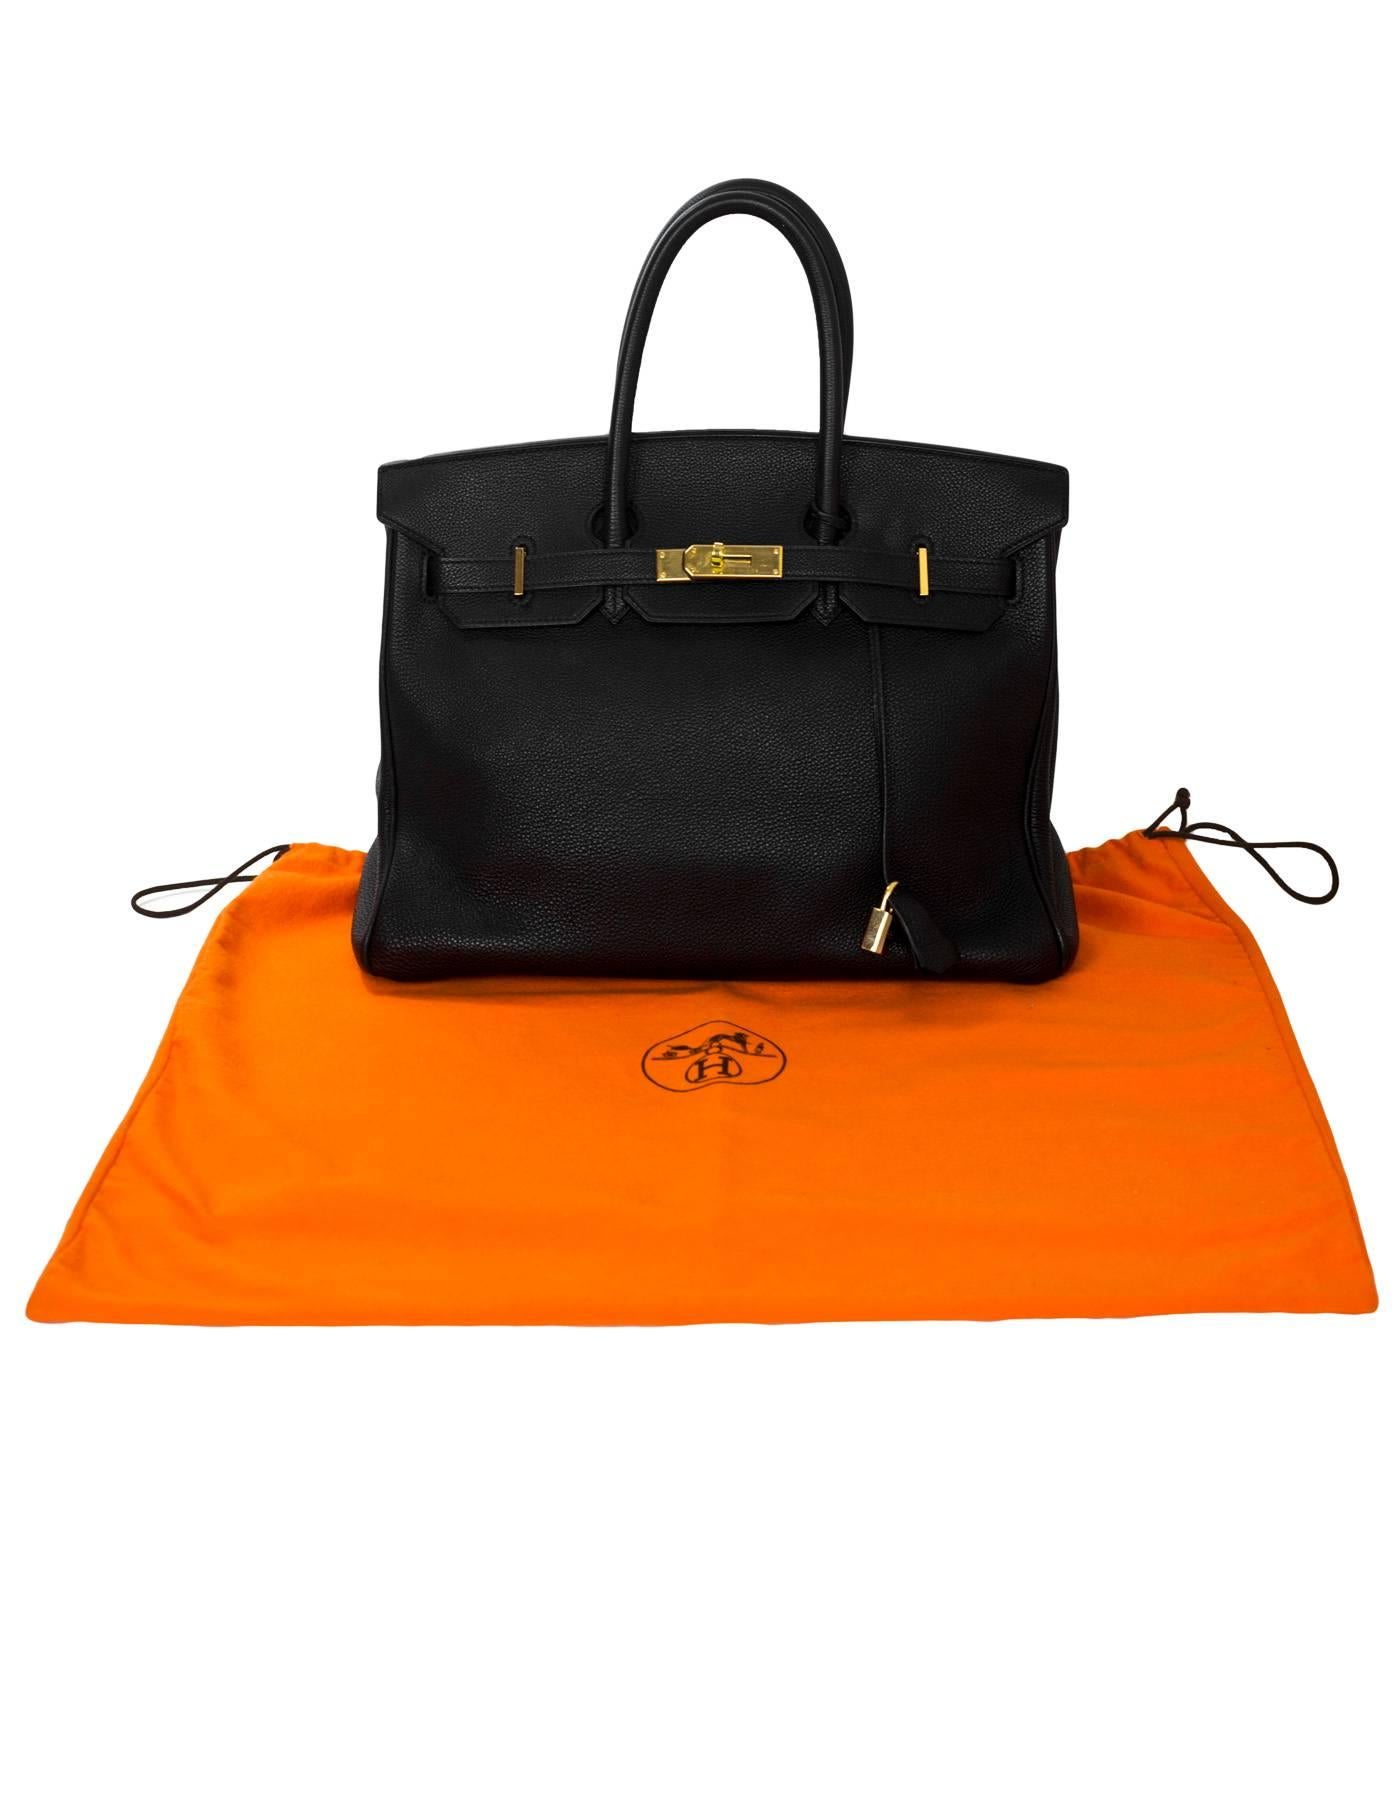 Hermes 2003 Black Togo Leather 35cm Birkin Bag w/ Gold Hardware 5